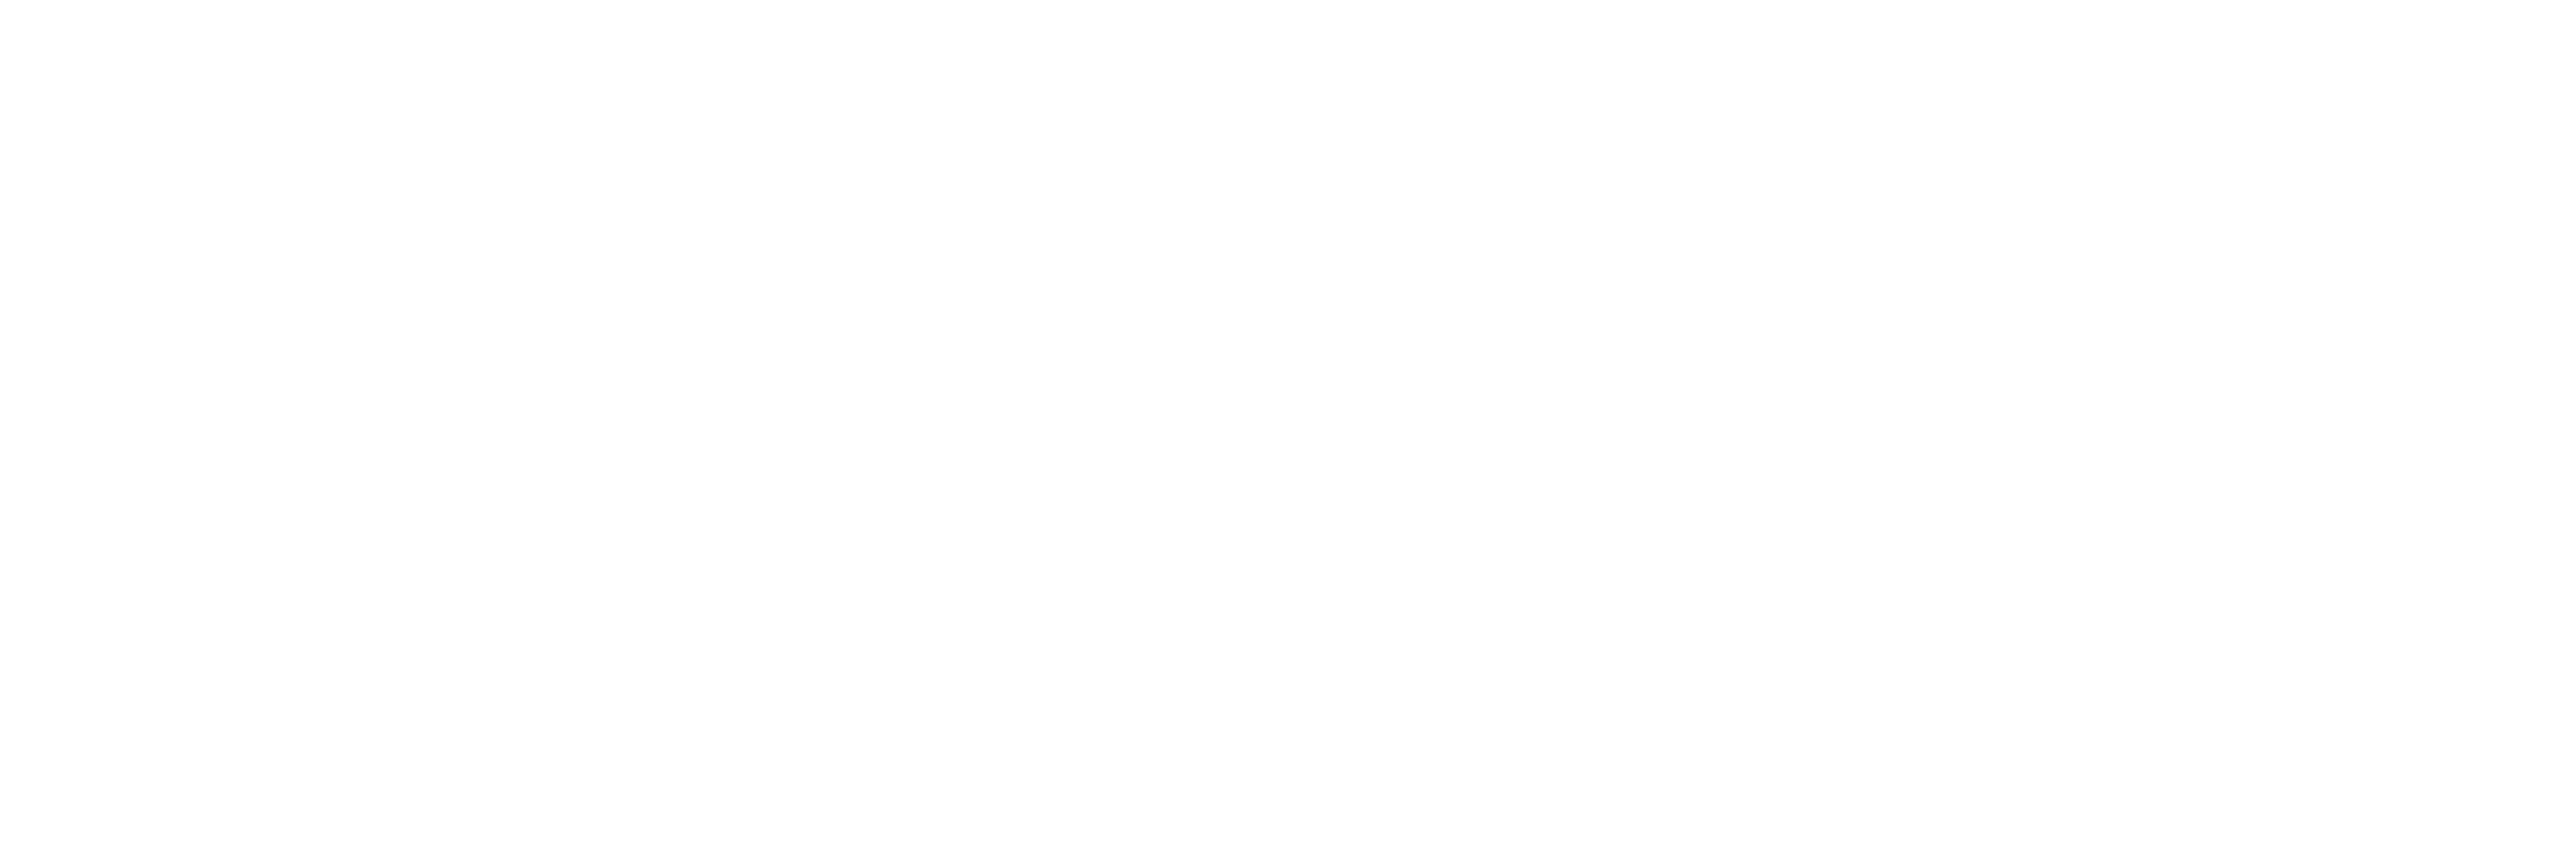 Decorative Aggregates Text